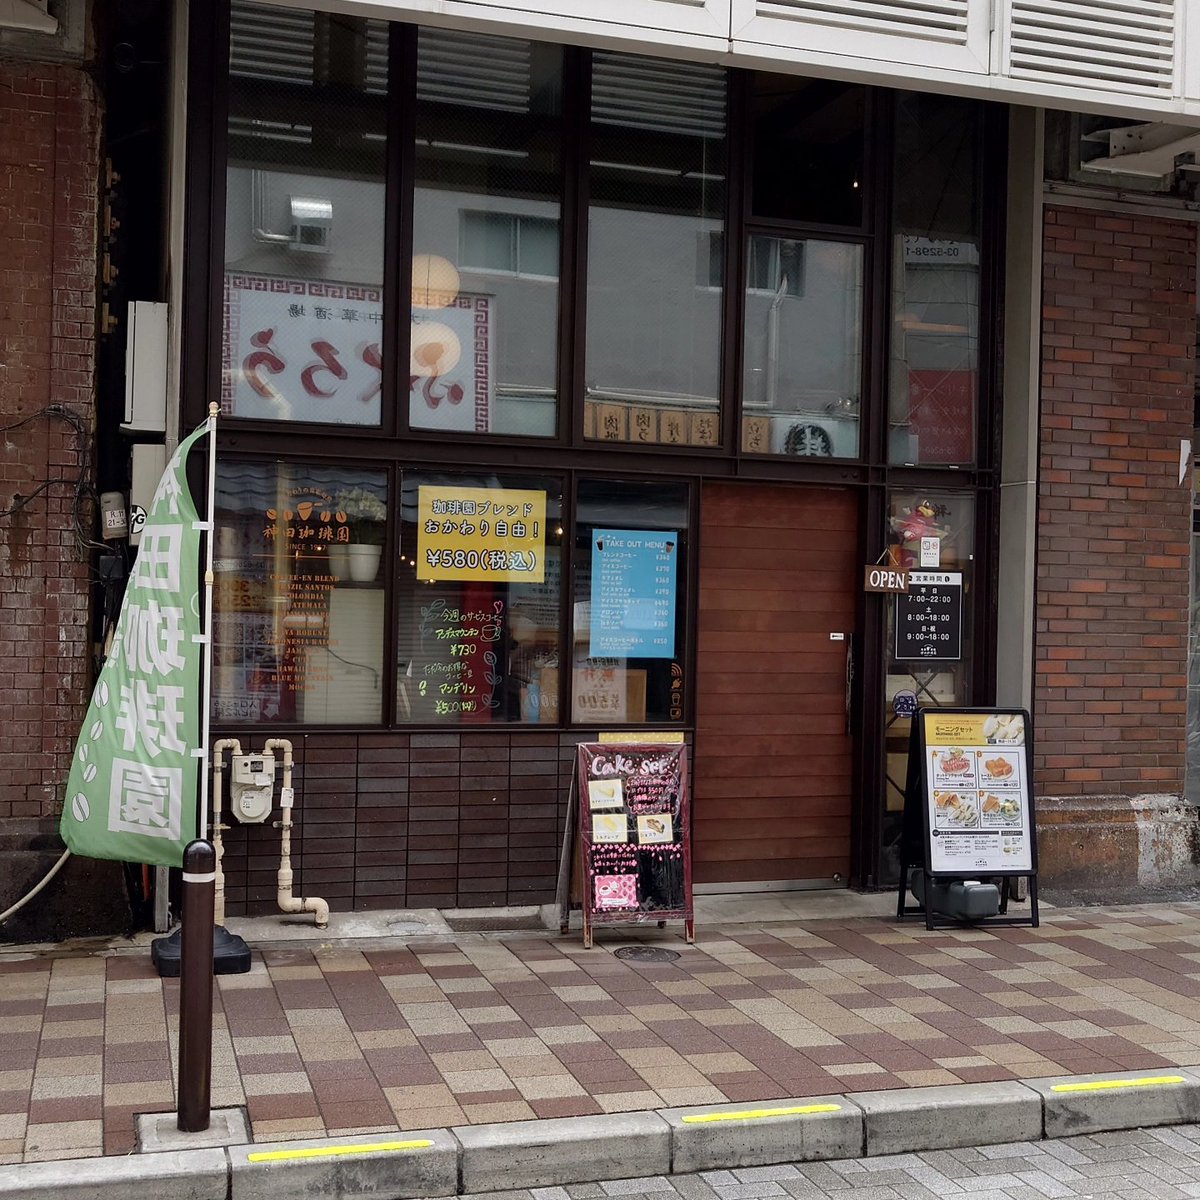 【やっぱり今日も純喫茶☕01330〜神田・神田珈琲園】

本拠地神田のオアシス的存在の人気純喫茶。
煎り立て・挽き立て・淹れ立ての本格派珈琲は美味しくておかわり自由。
パン系メニューも絶品。

#JapaneseCafe
#神田珈琲園